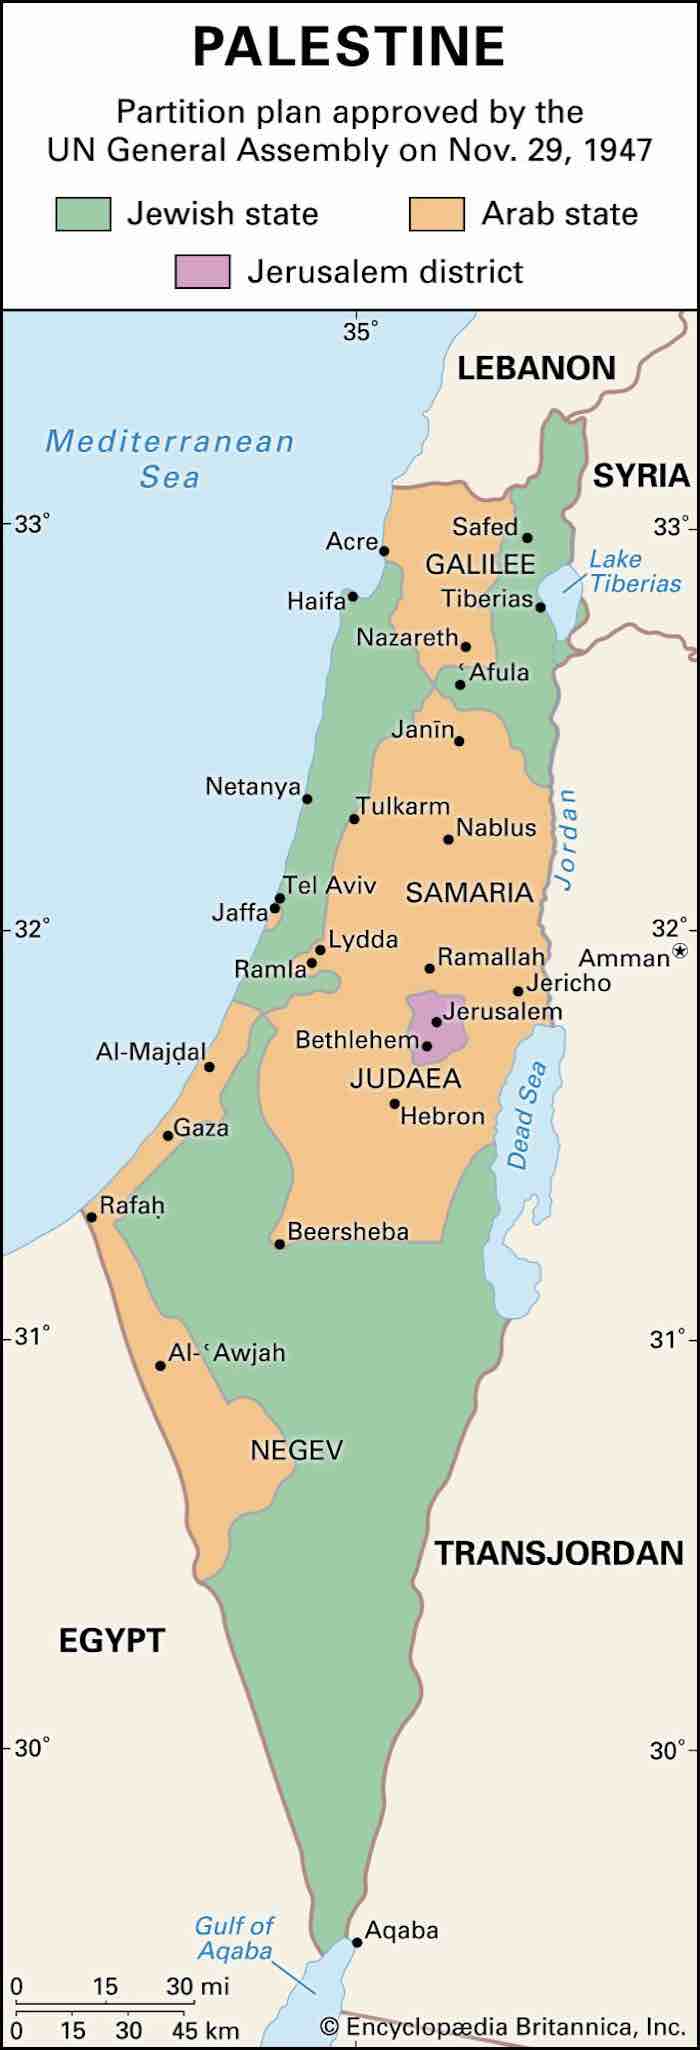 Arab-Jewish conflict